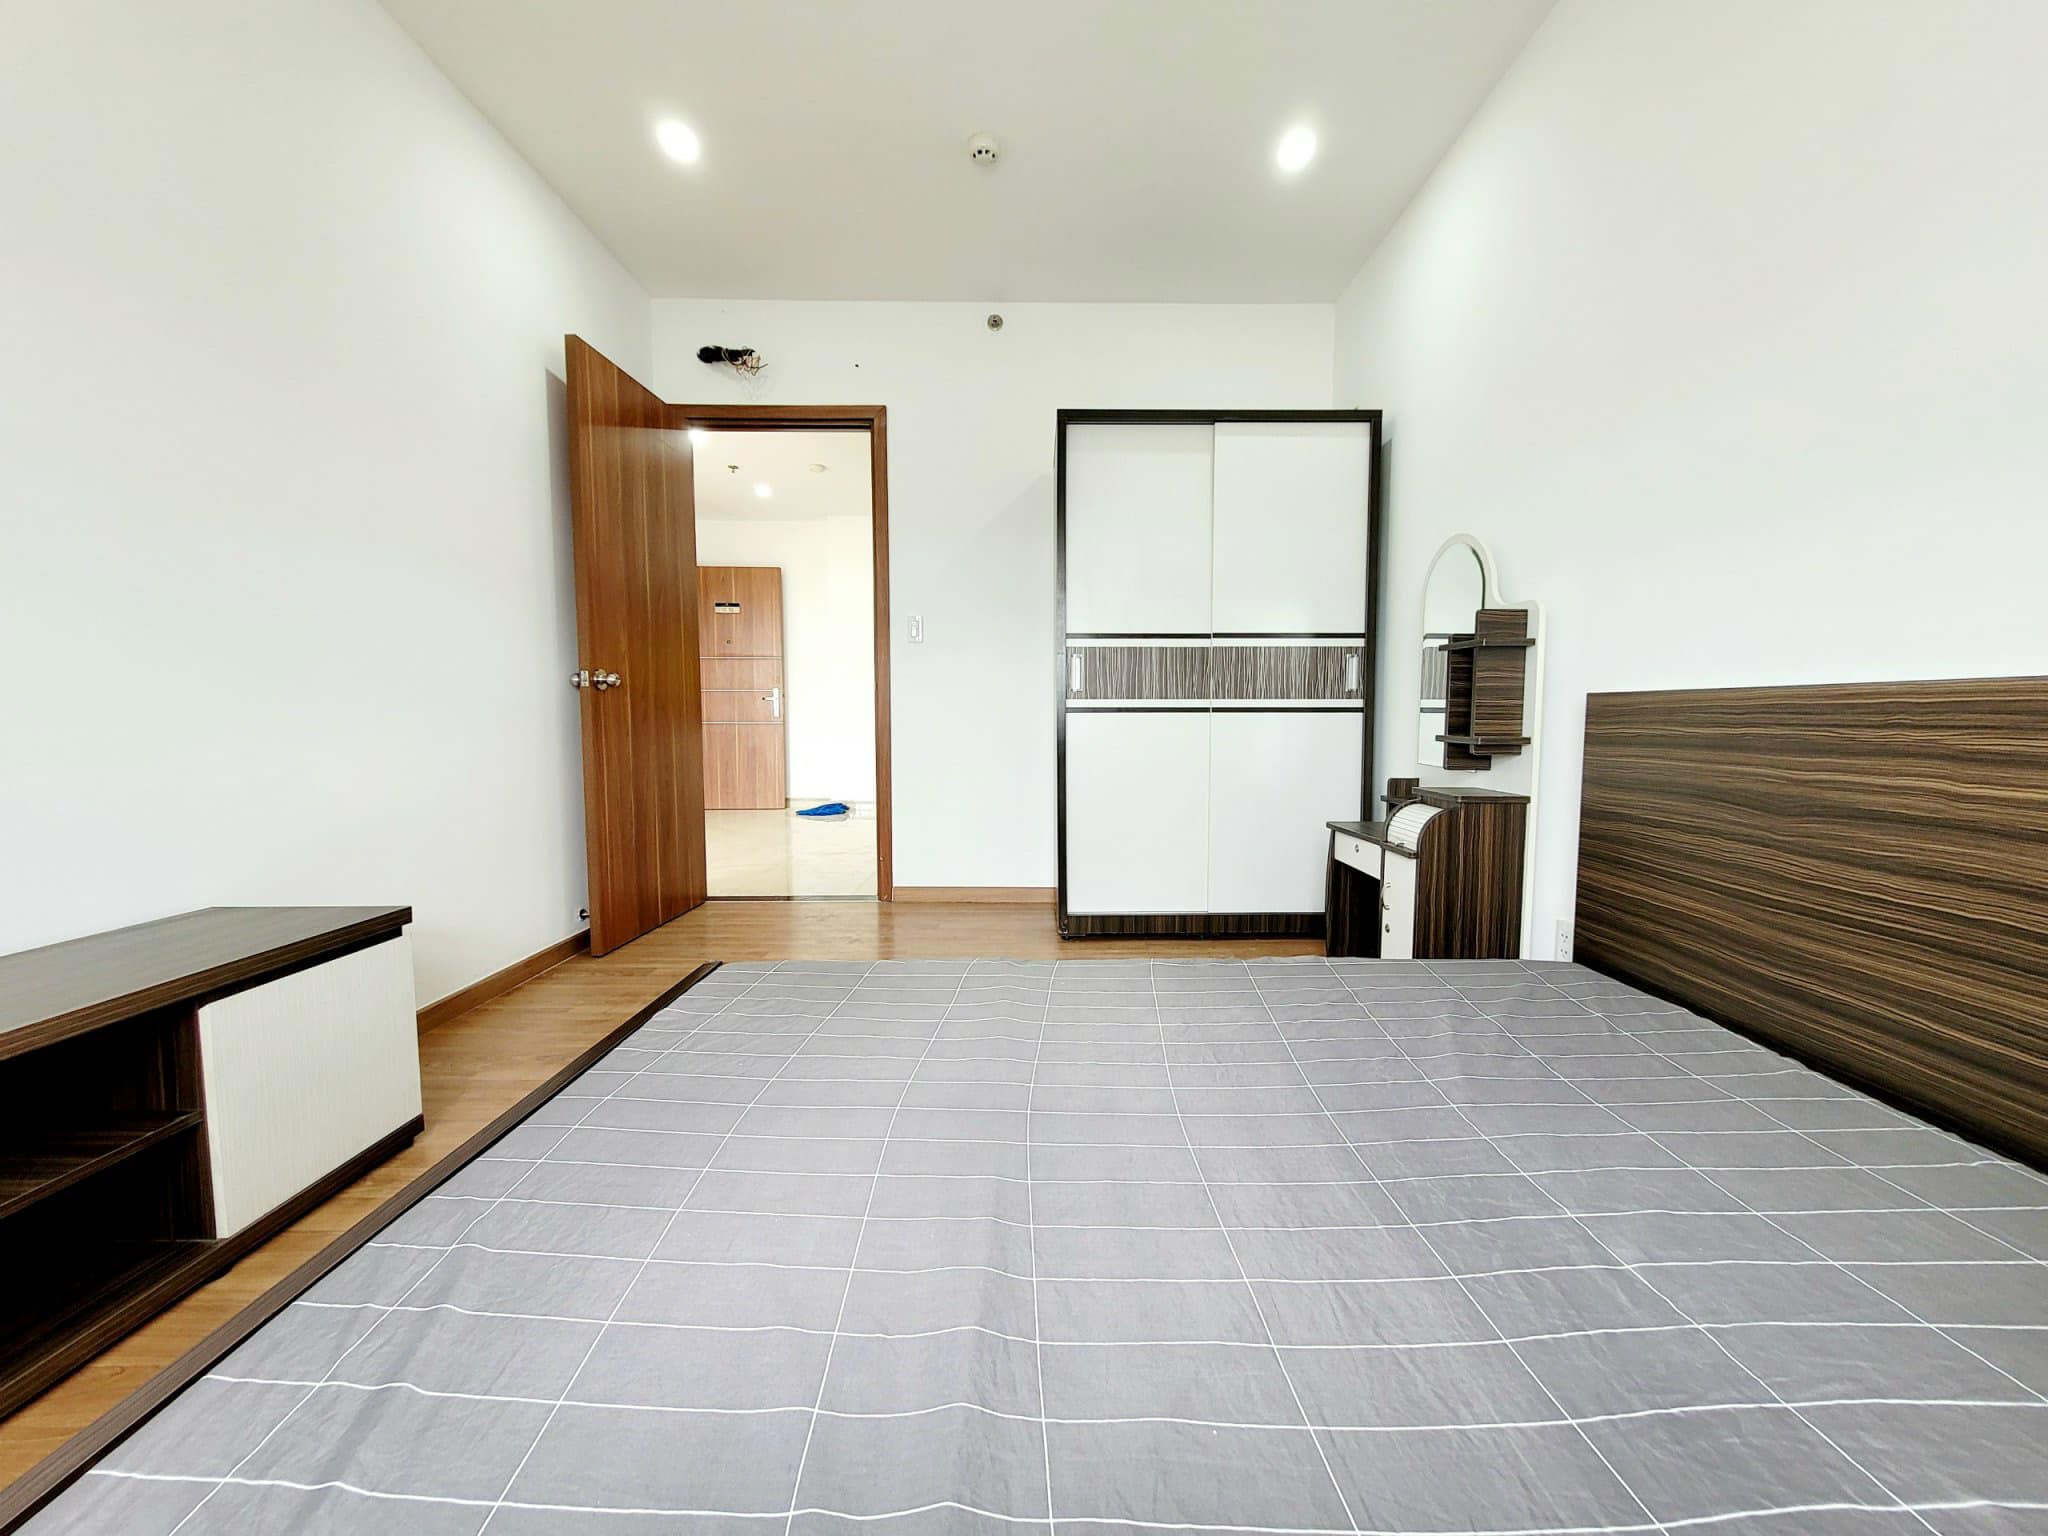 Phòng ngủ chung cư Cityland Park Hills 1 PN cho thuê nhà có nội thất